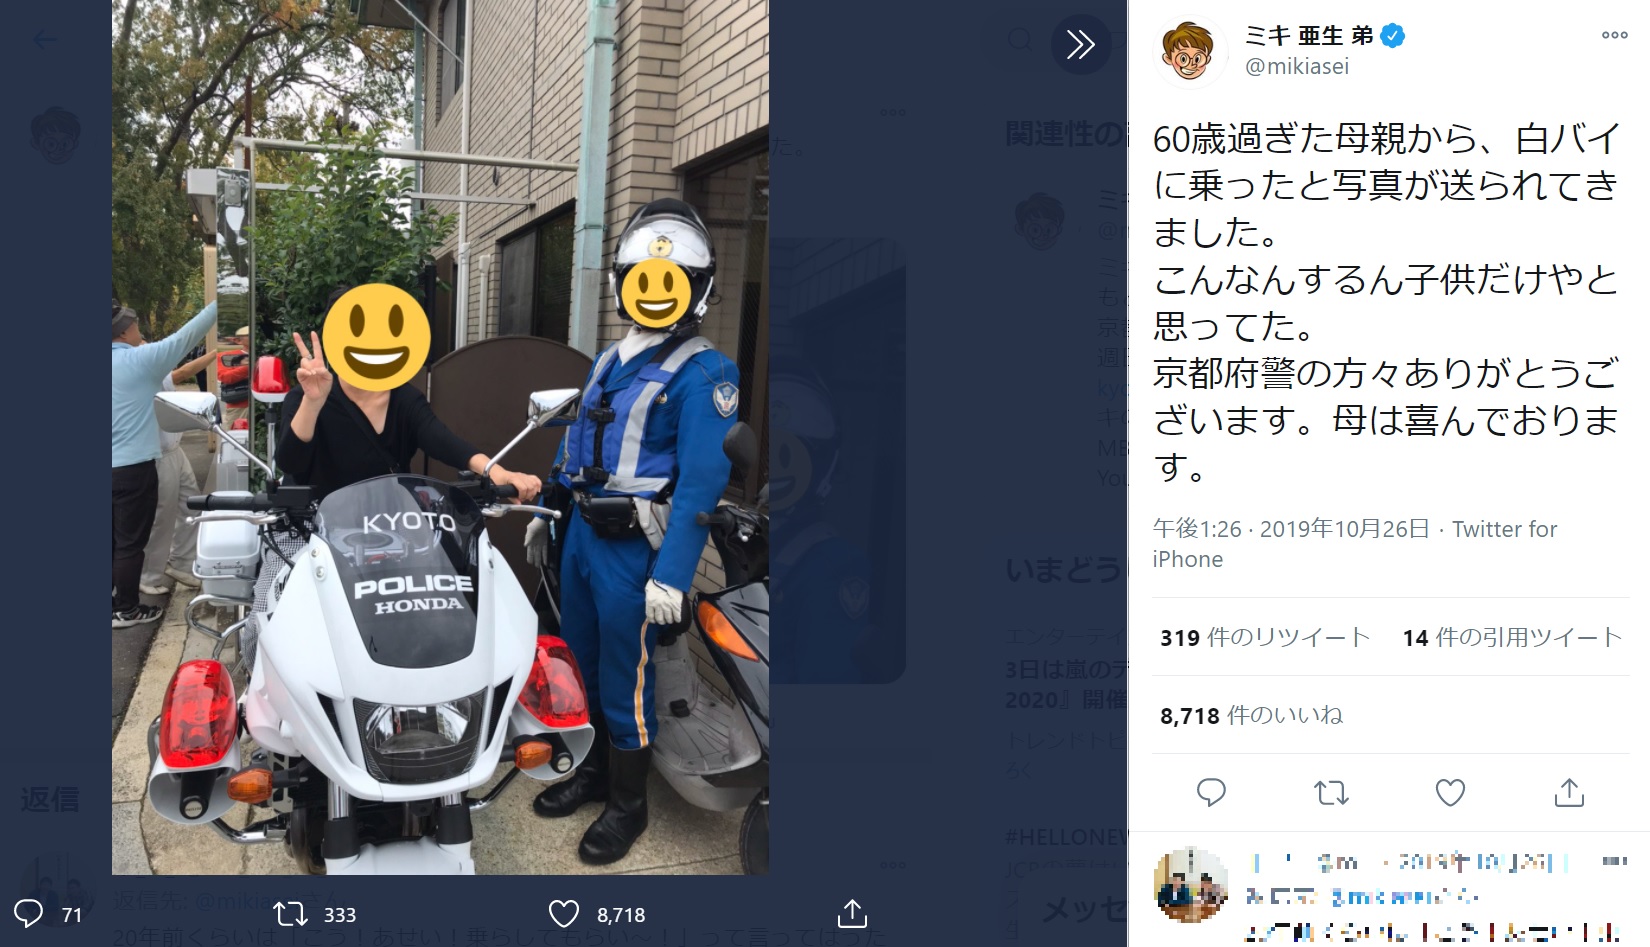 昴生と亜生のおちゃめな母親（画像は『ミキ 亜生 弟　2019年10月26日付Twitter「60歳過ぎた母親から、白バイに乗ったと写真が送られてきました。」』のスクリーンショット）